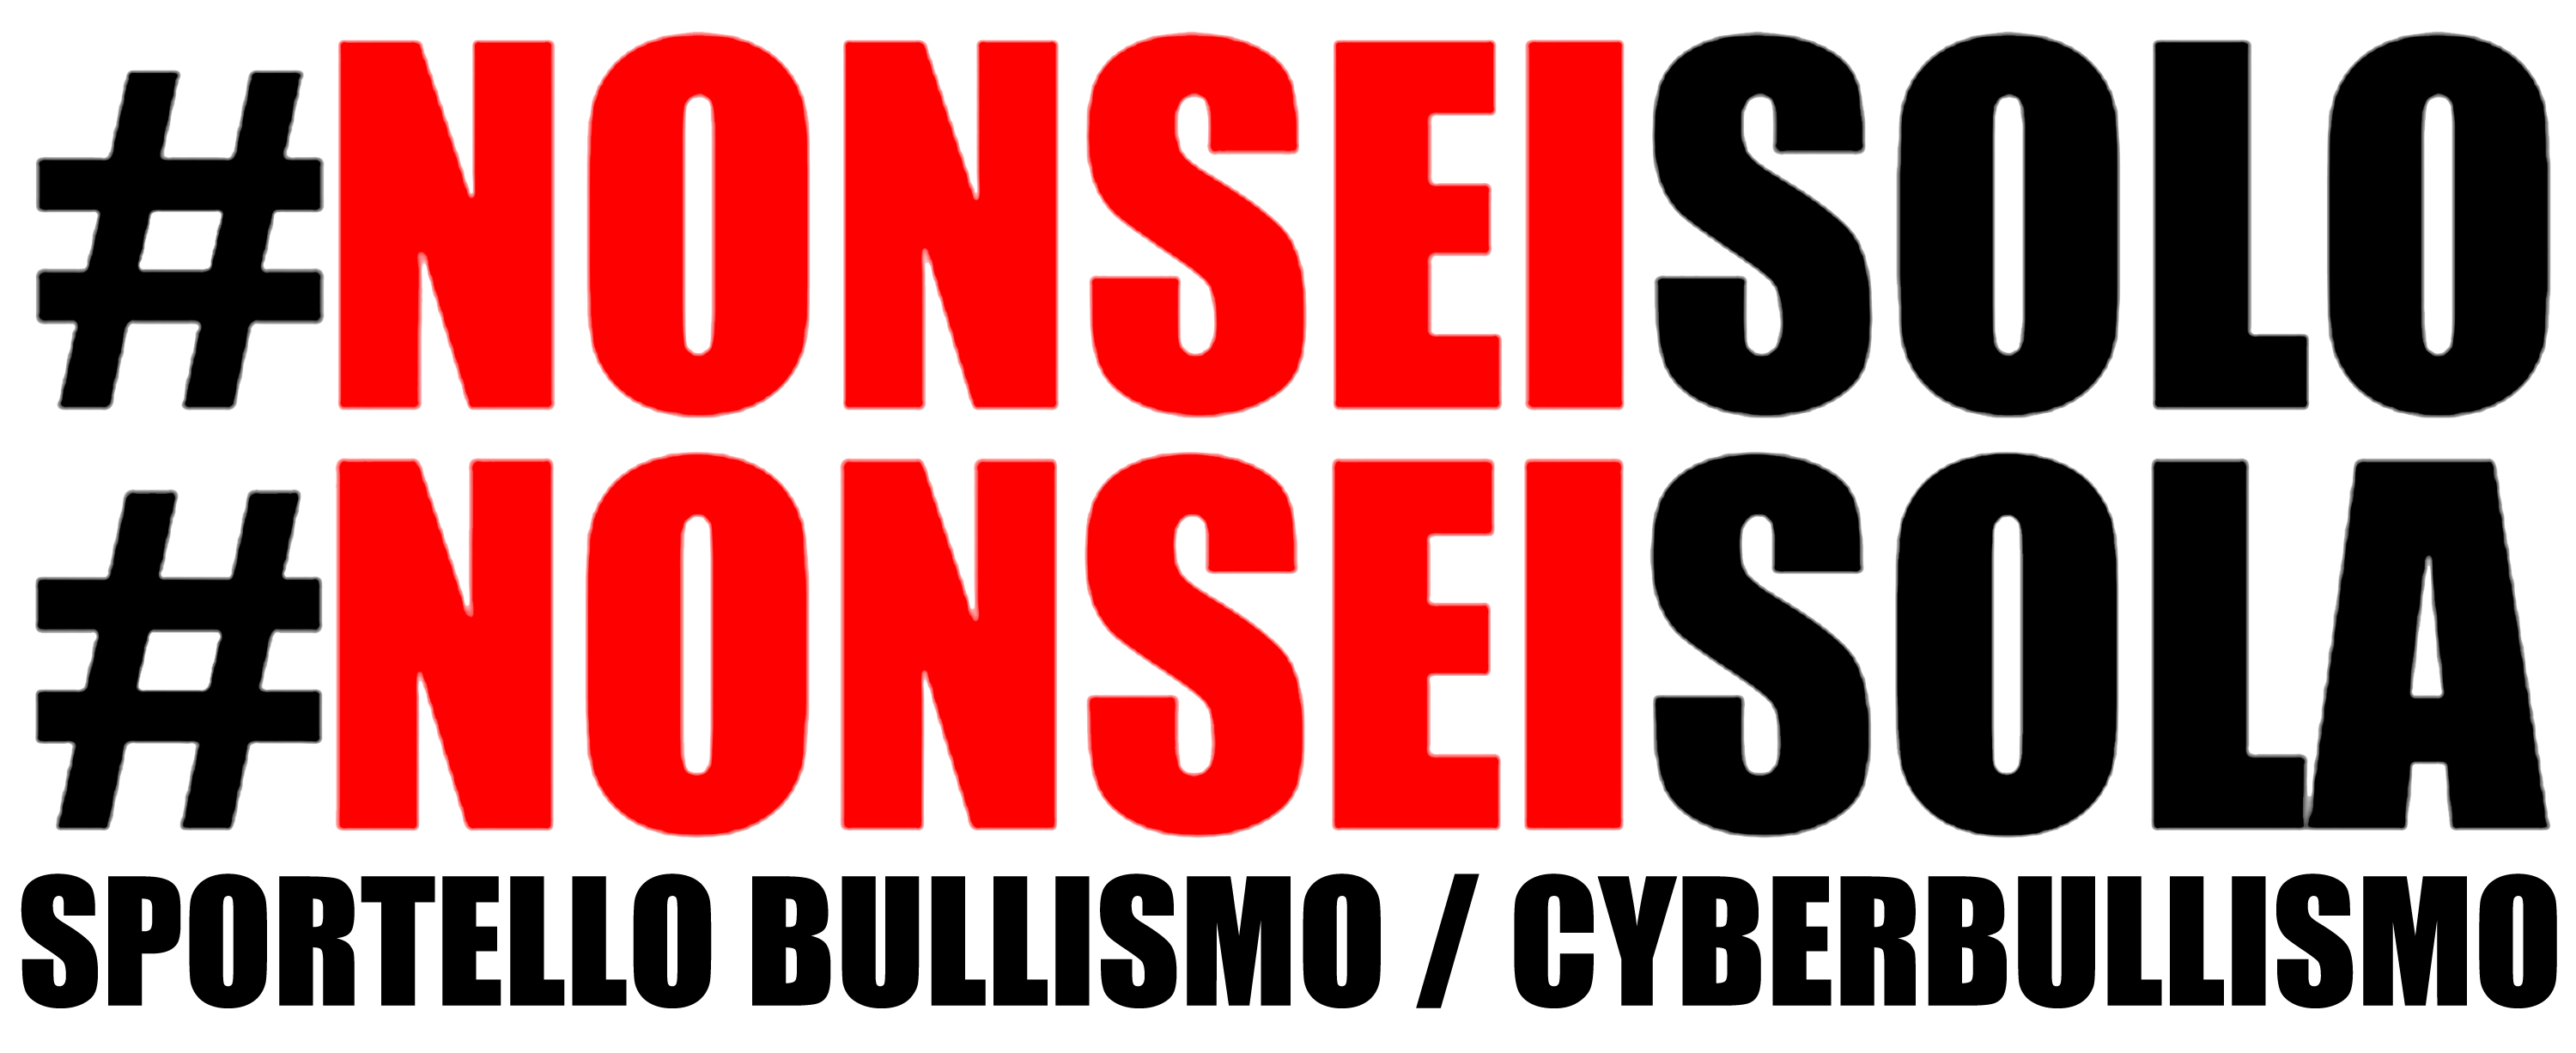 CFP Canossa Brescia Sportello Bullismo / Cyberbullismo